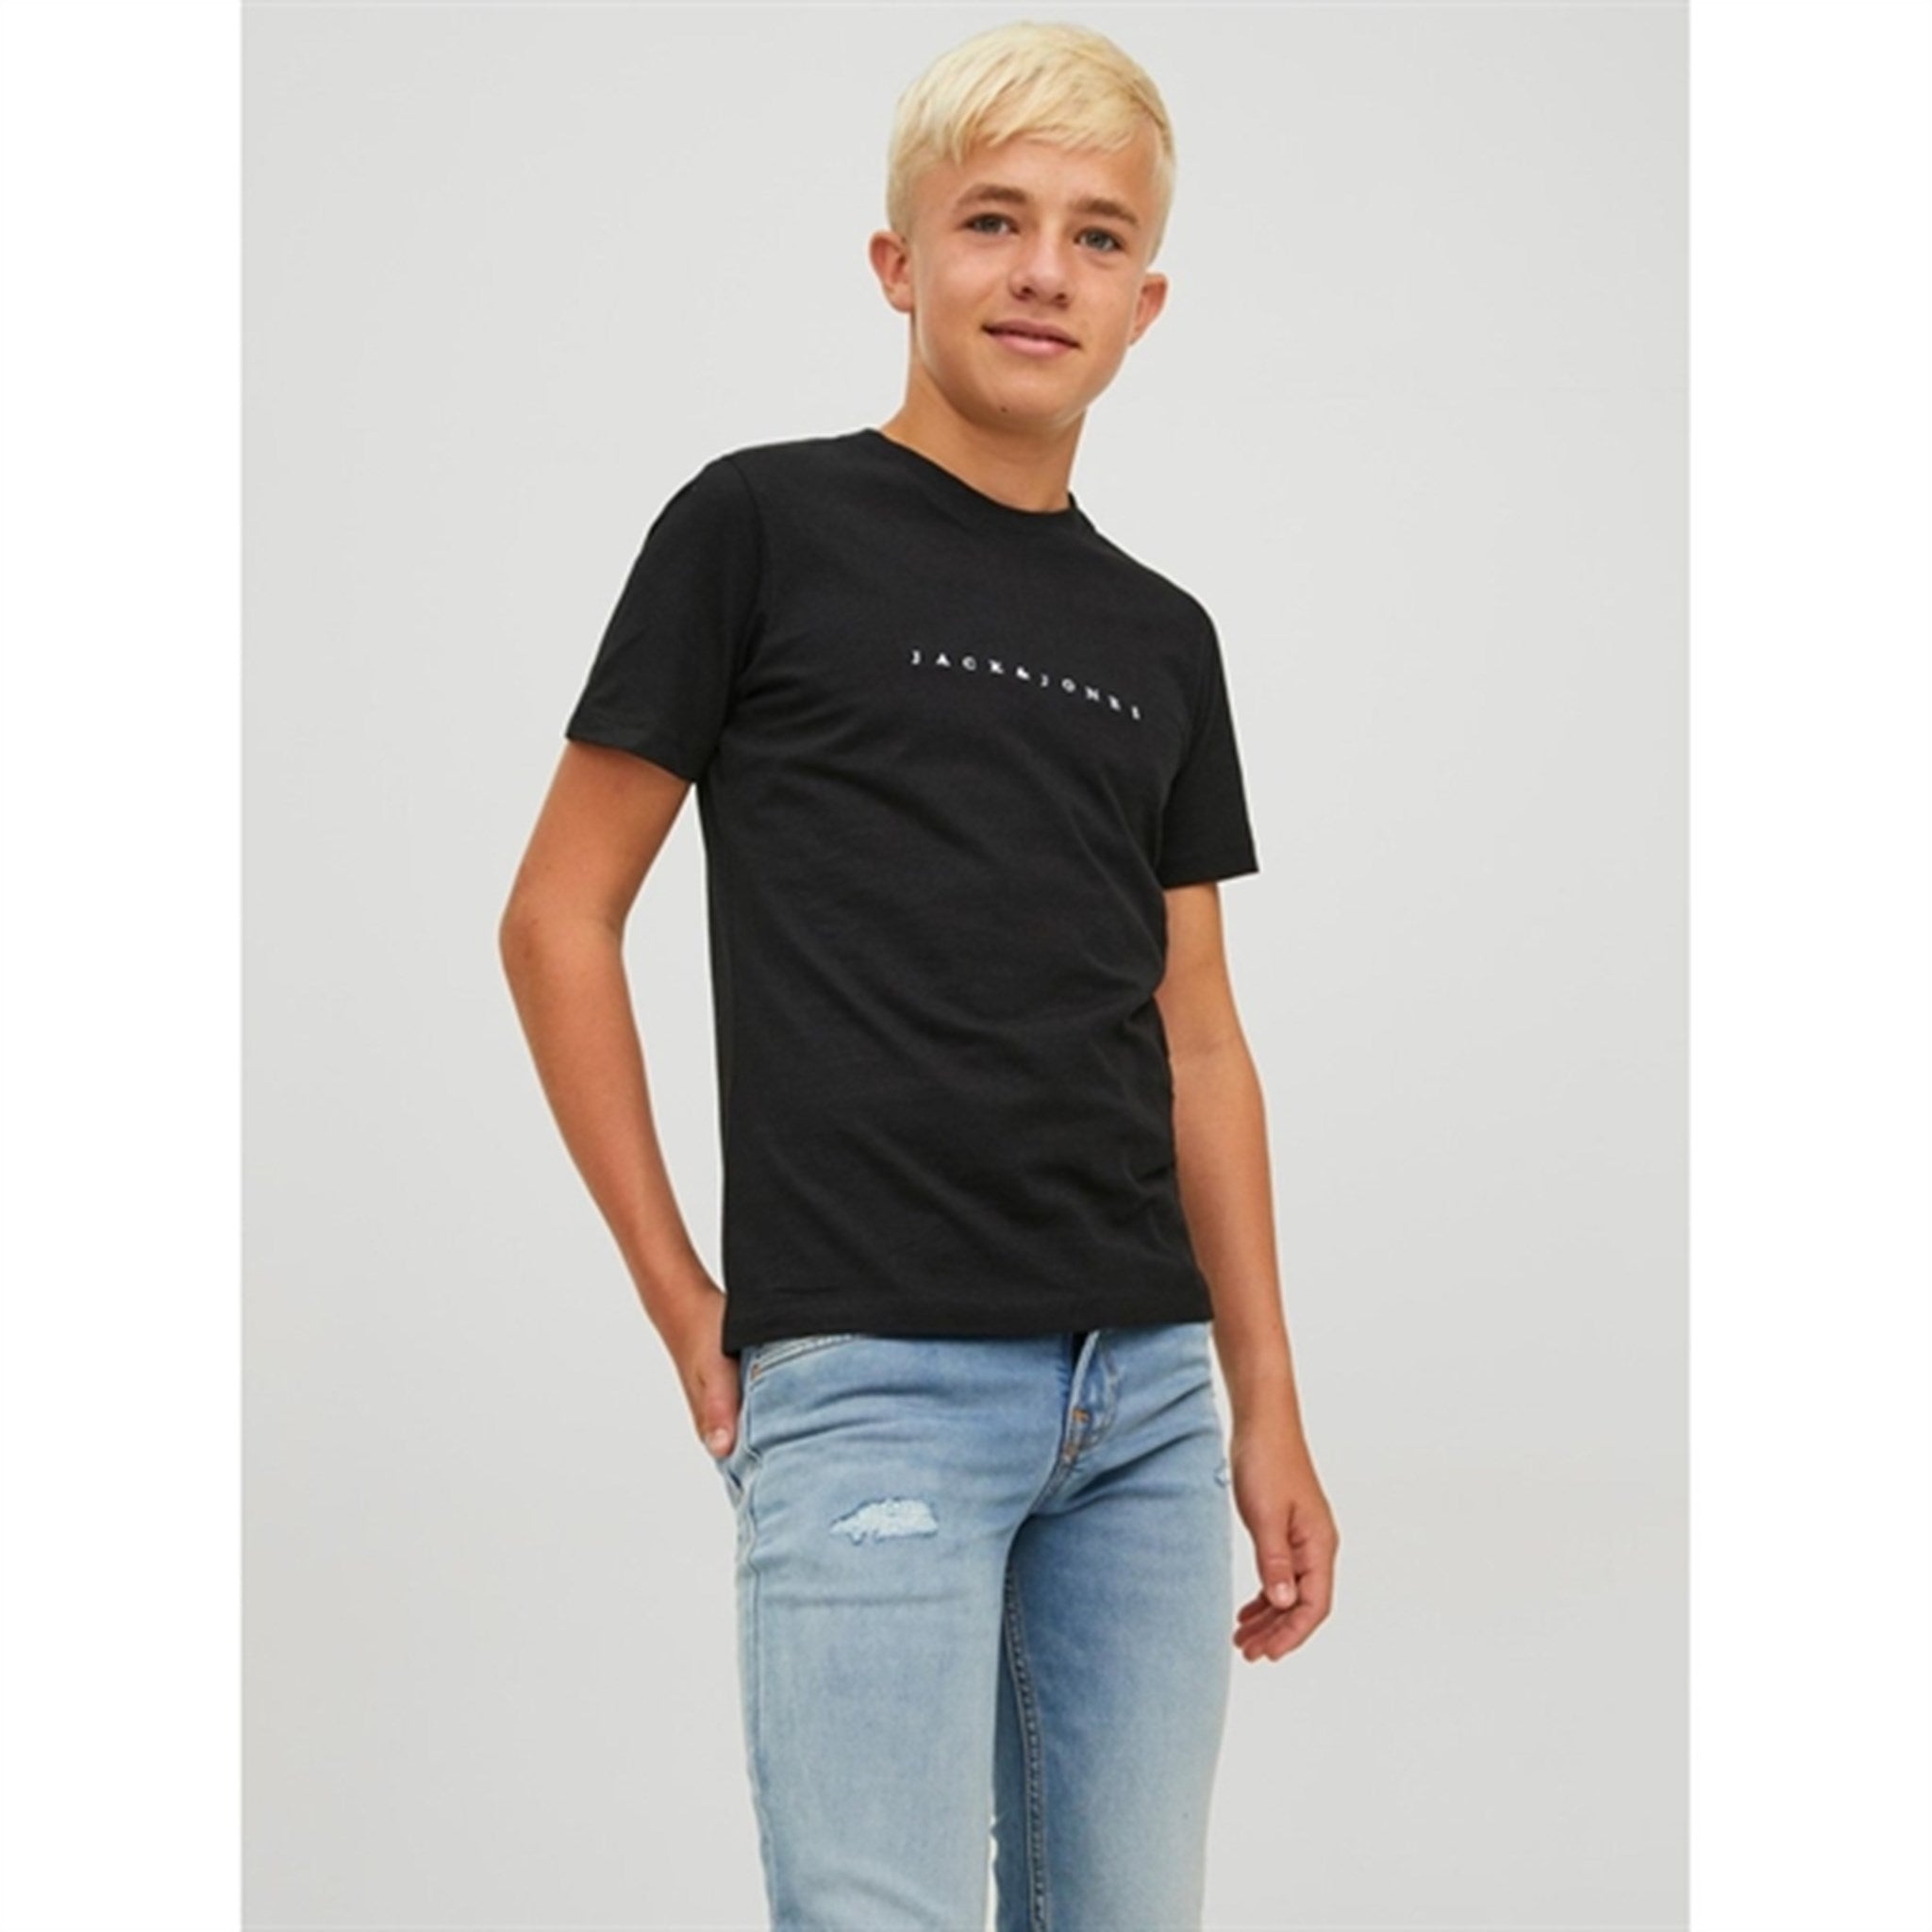 Jack & Jones Junior Black Copenhagen T-Shirt Noos 2